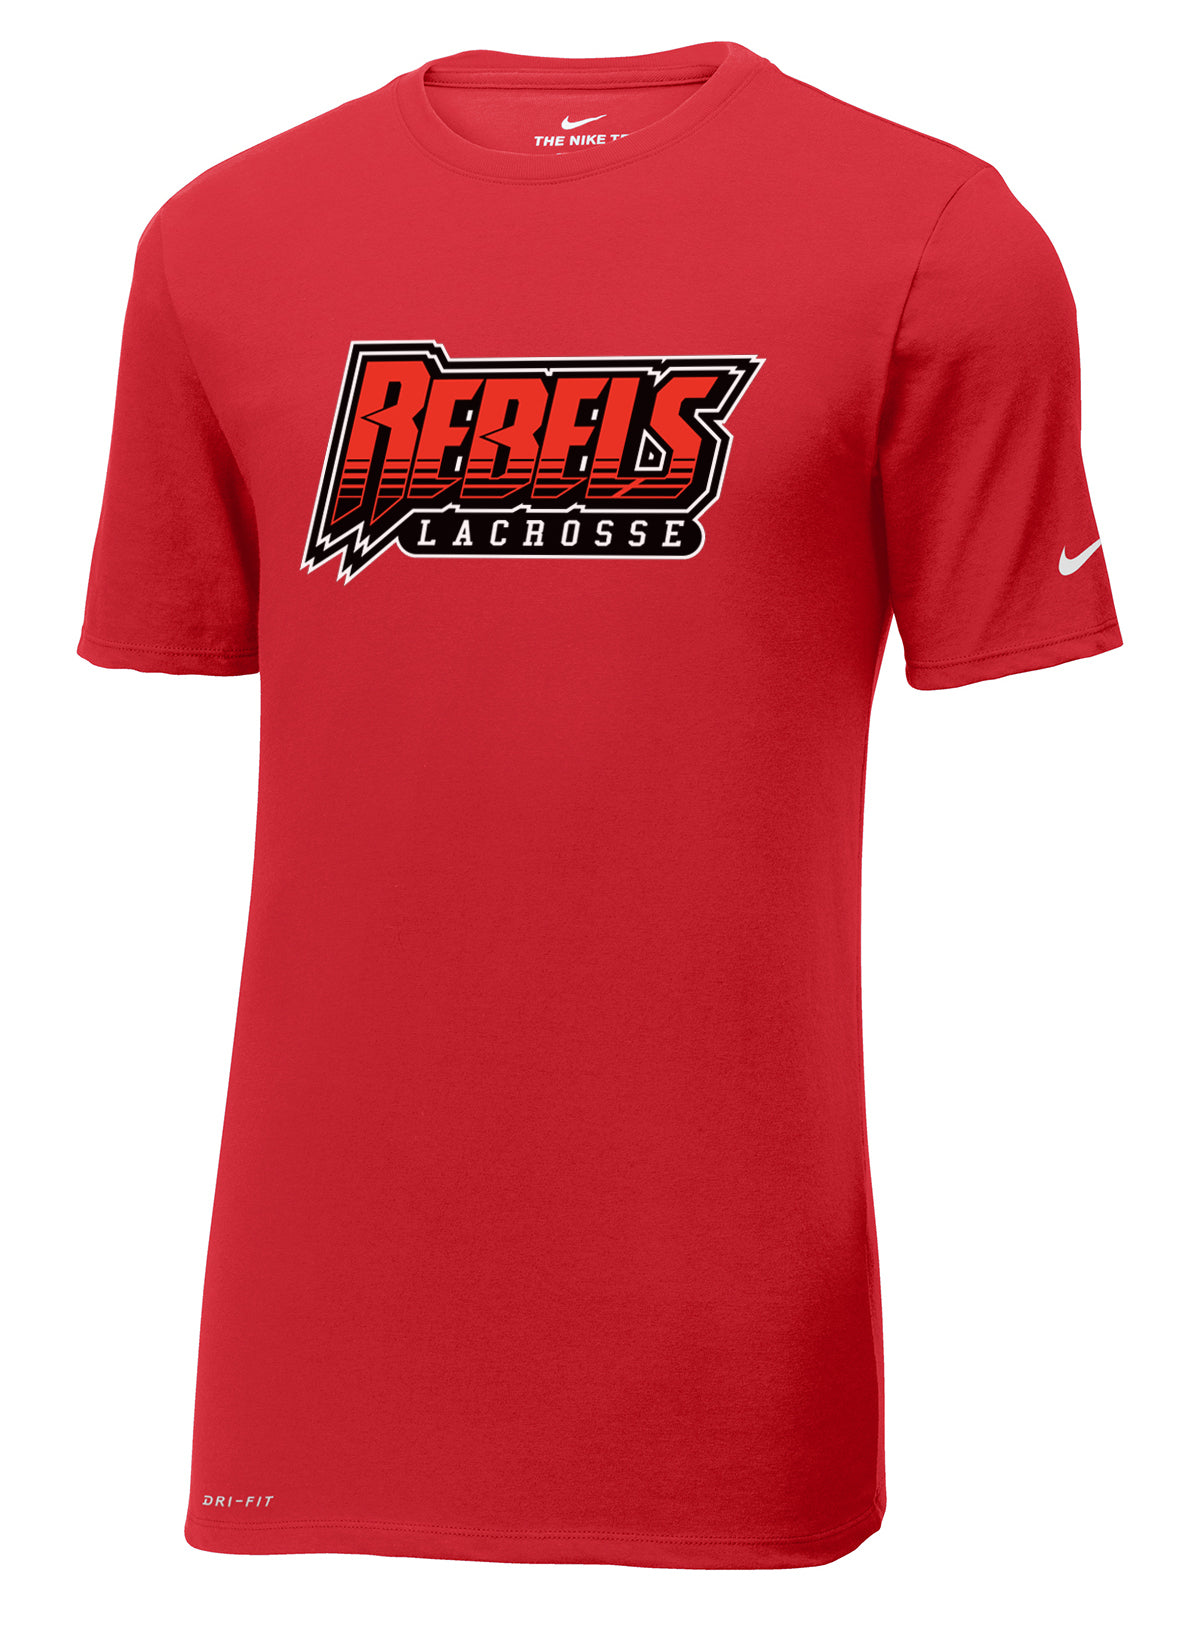 Rebels Lacrosse Gym Red Nike Dri-FIT Tee